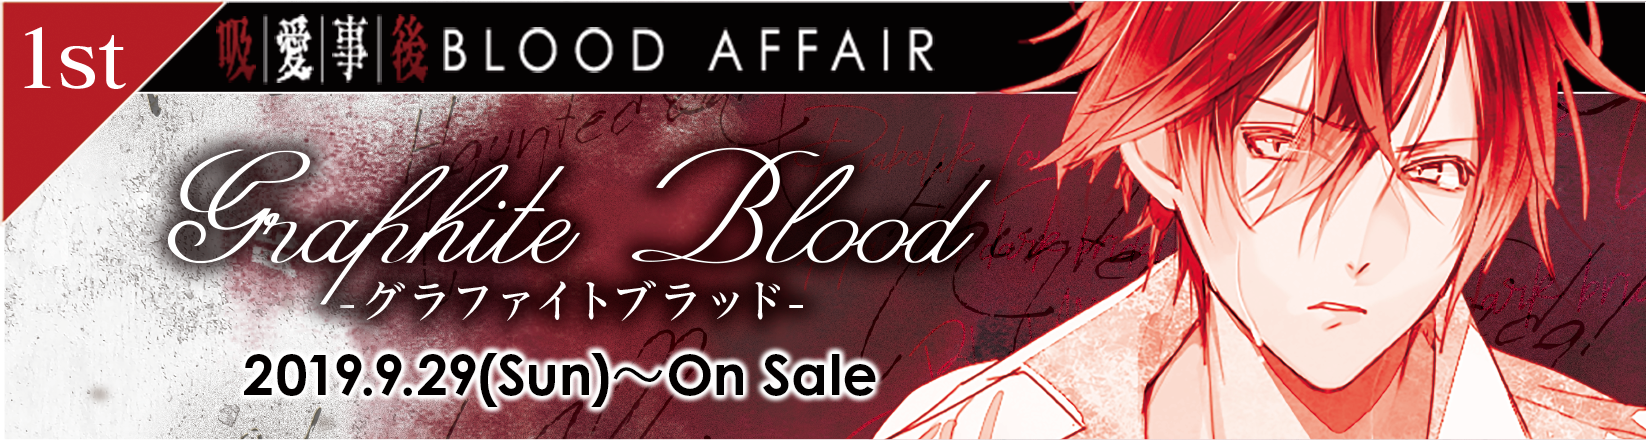 BLOOD AFFAIR -Graphite Blood-